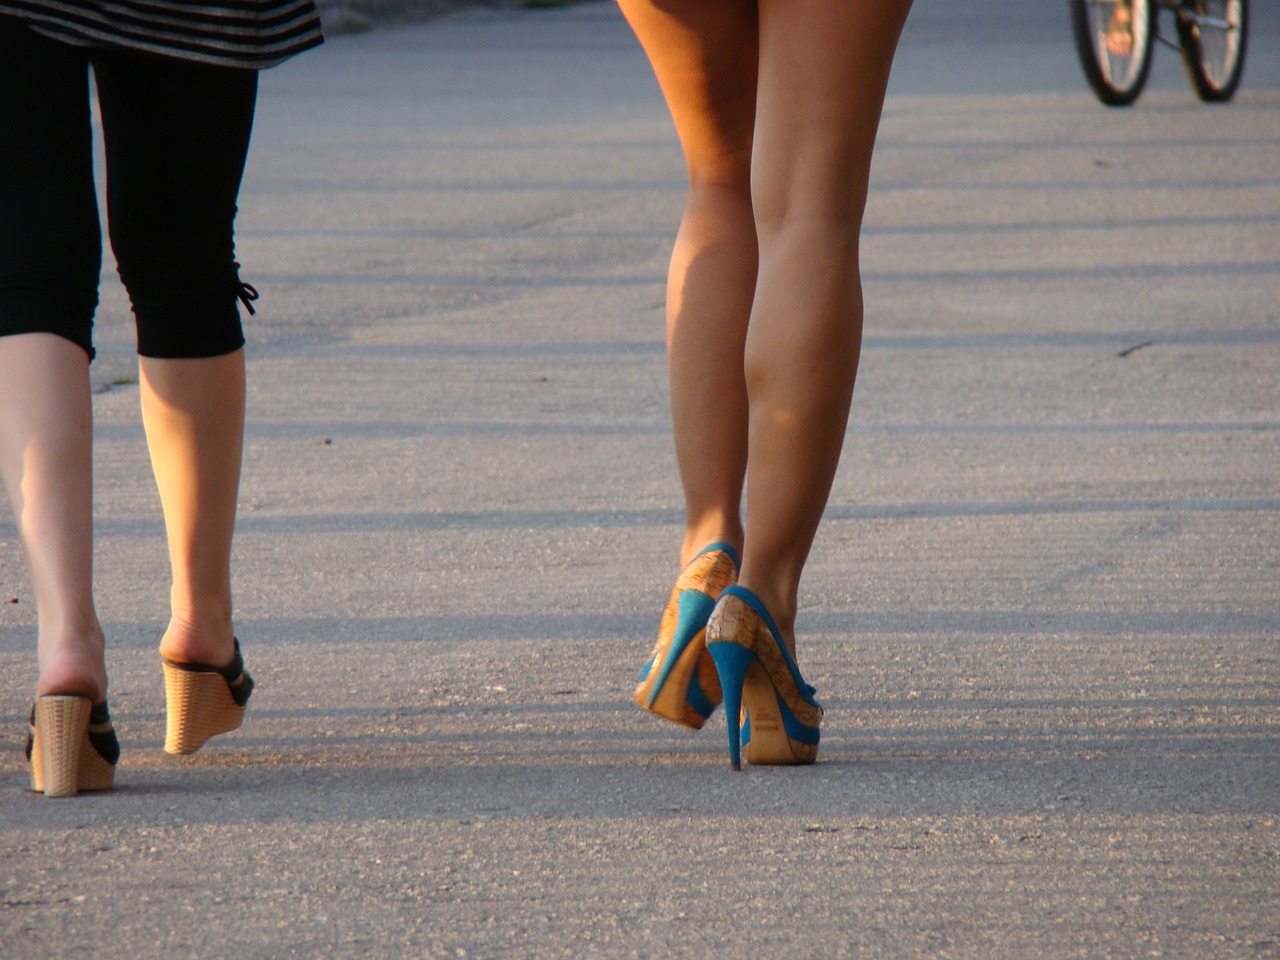 Парень снимает на улице стройные ножки прохожих телочек